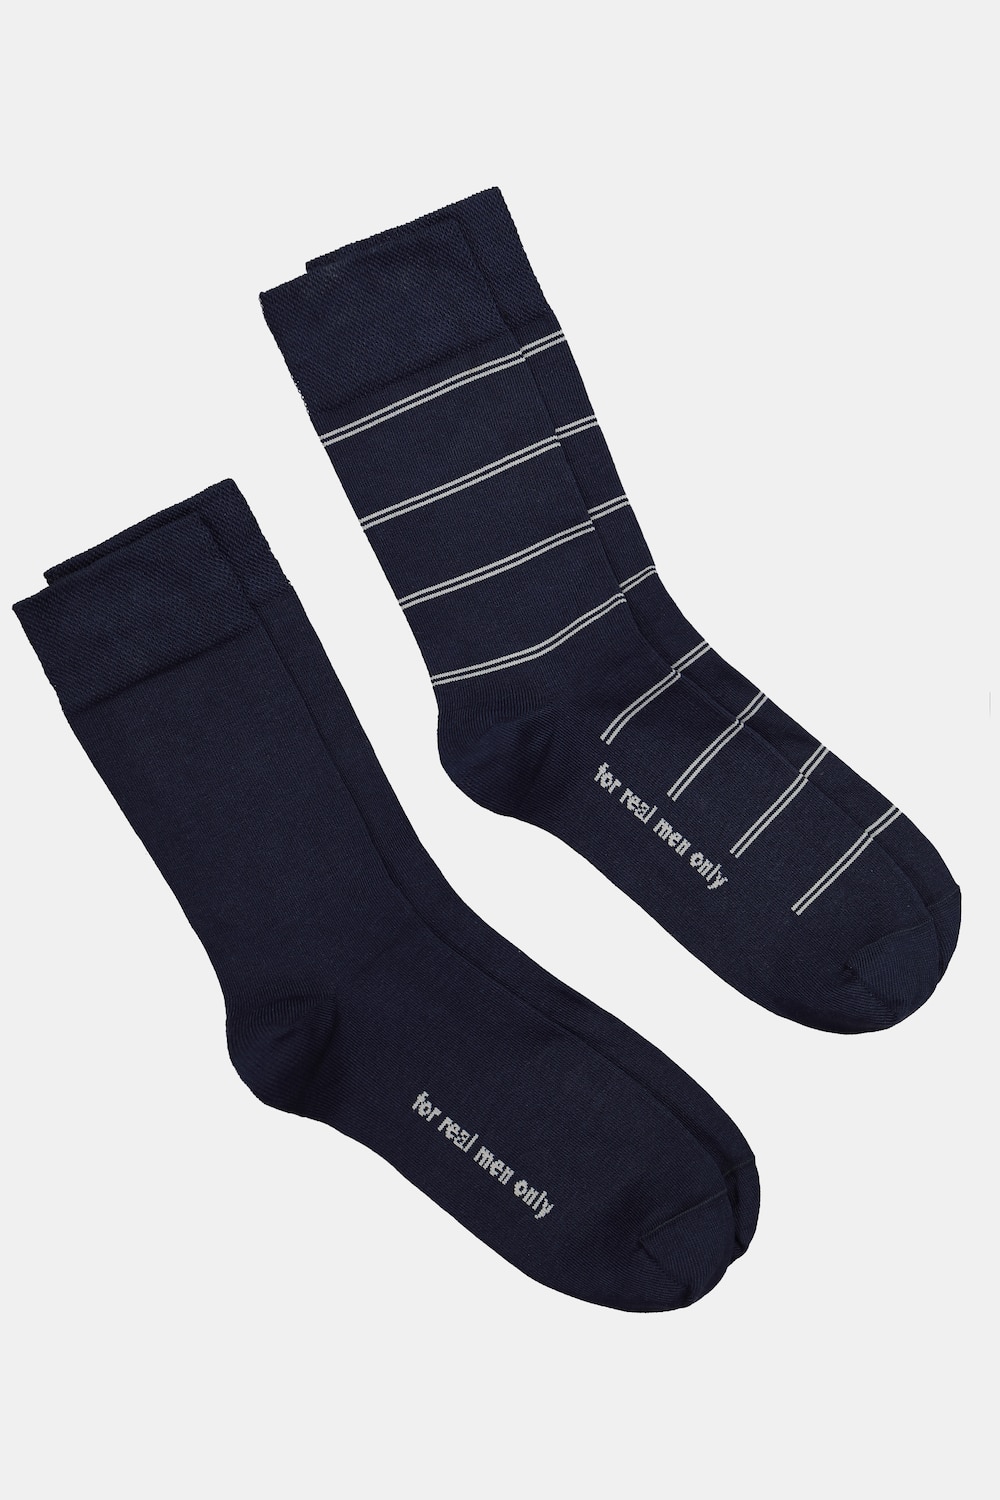 Große Größen JP1880 Socken, Herren, blau, Größe: 47-50, Baumwolle/Synthetische Fasern, JP1880 von JP1880